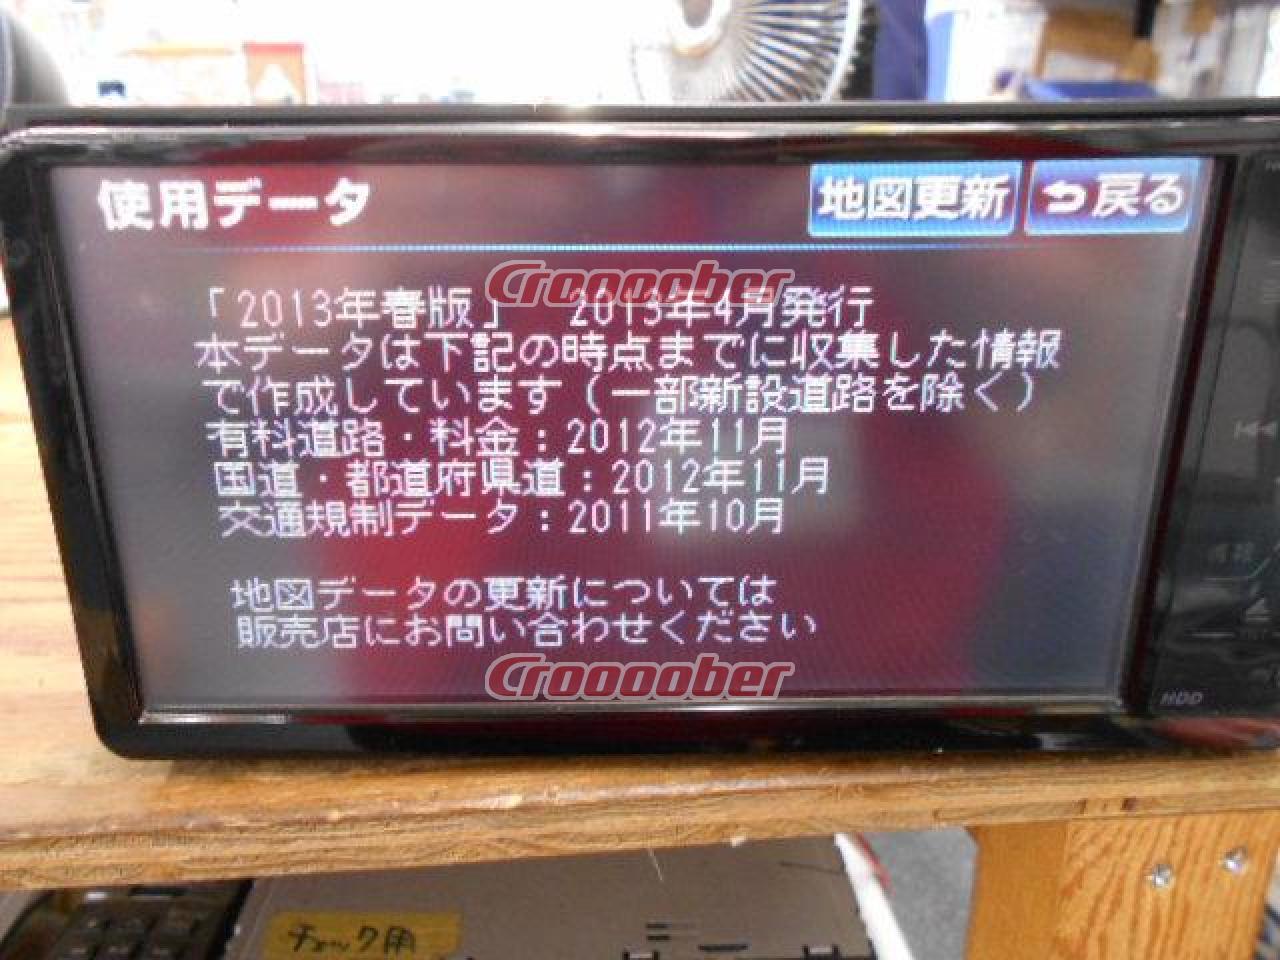 2013年春Ver!!】 トヨタ純正 NHZT-W58 2008年モデル フルセグ/CD/DVD 